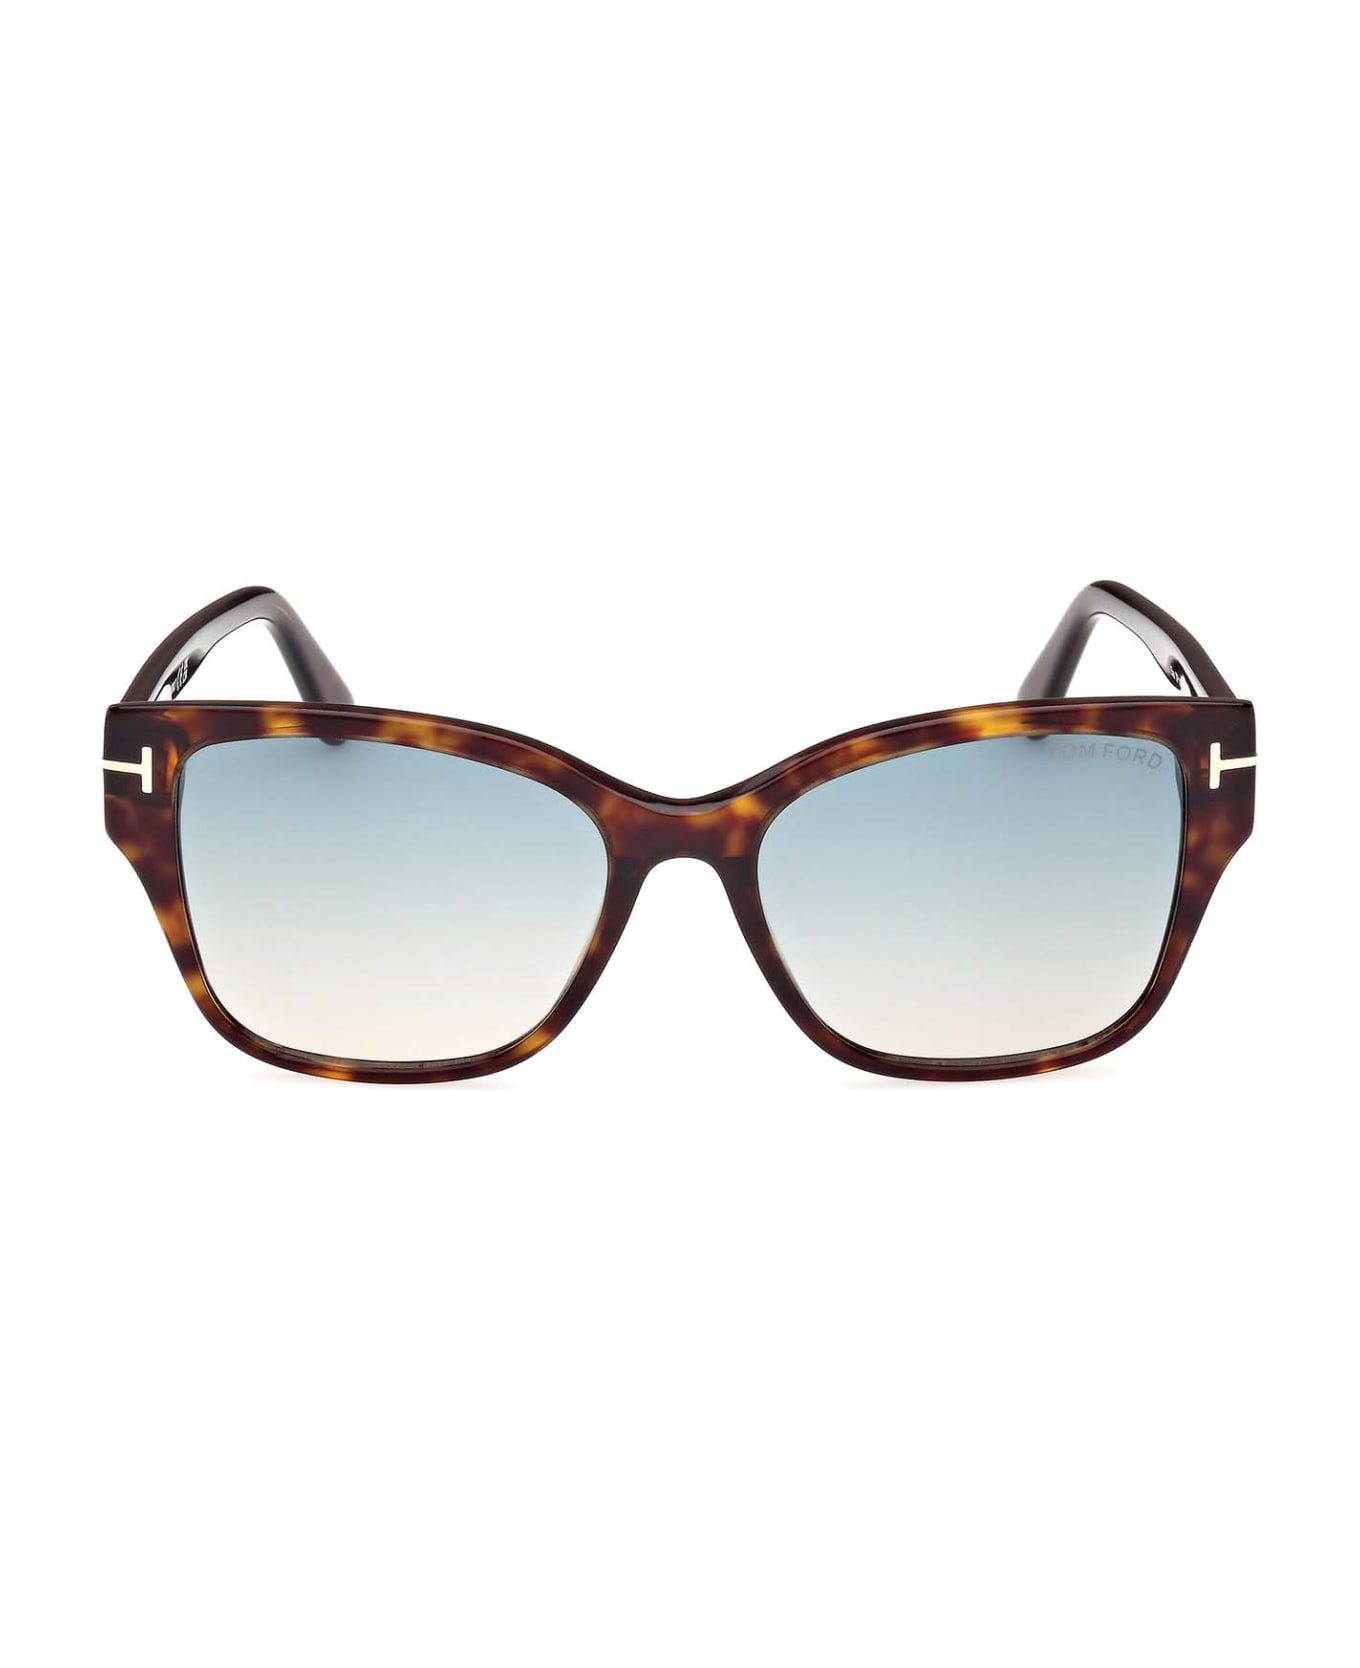 Tom Ford Eyewear Sunglasses - Marrone